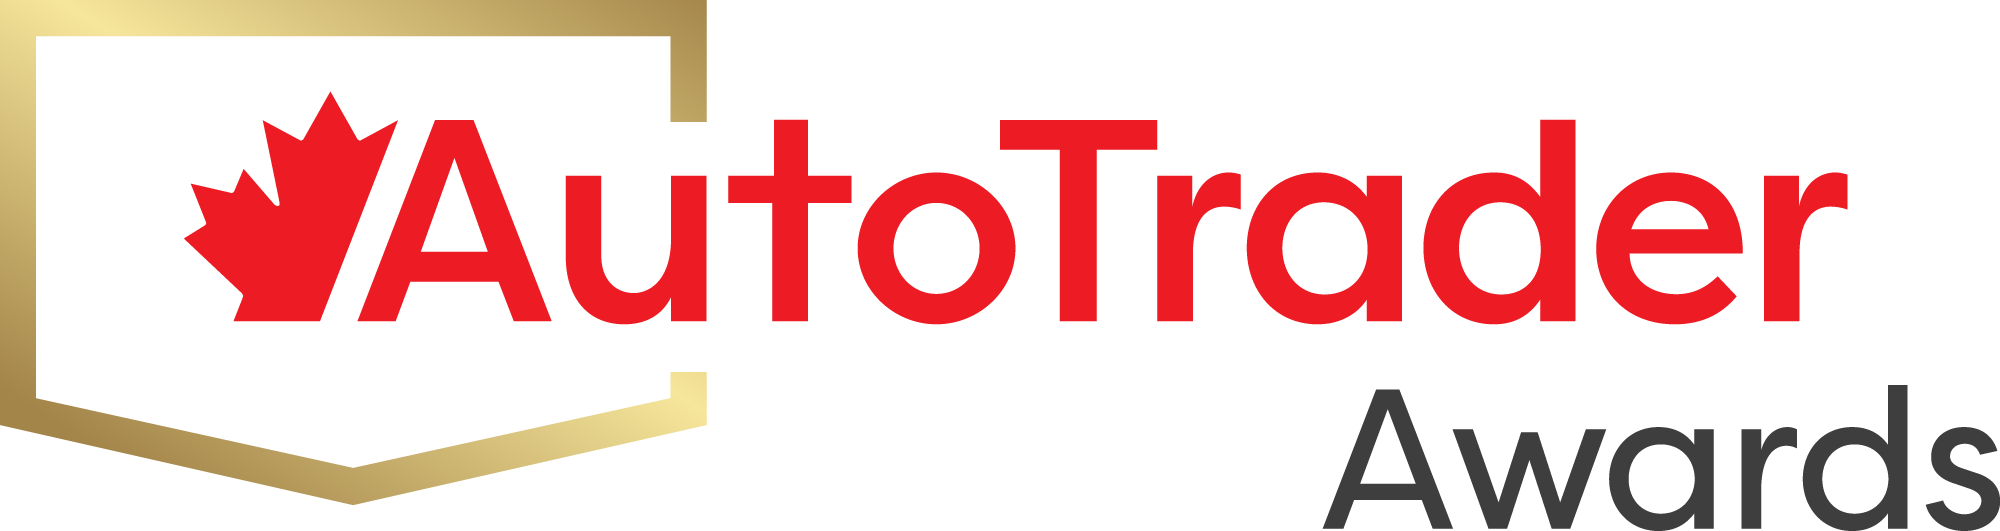 AutoTrader Awards logo